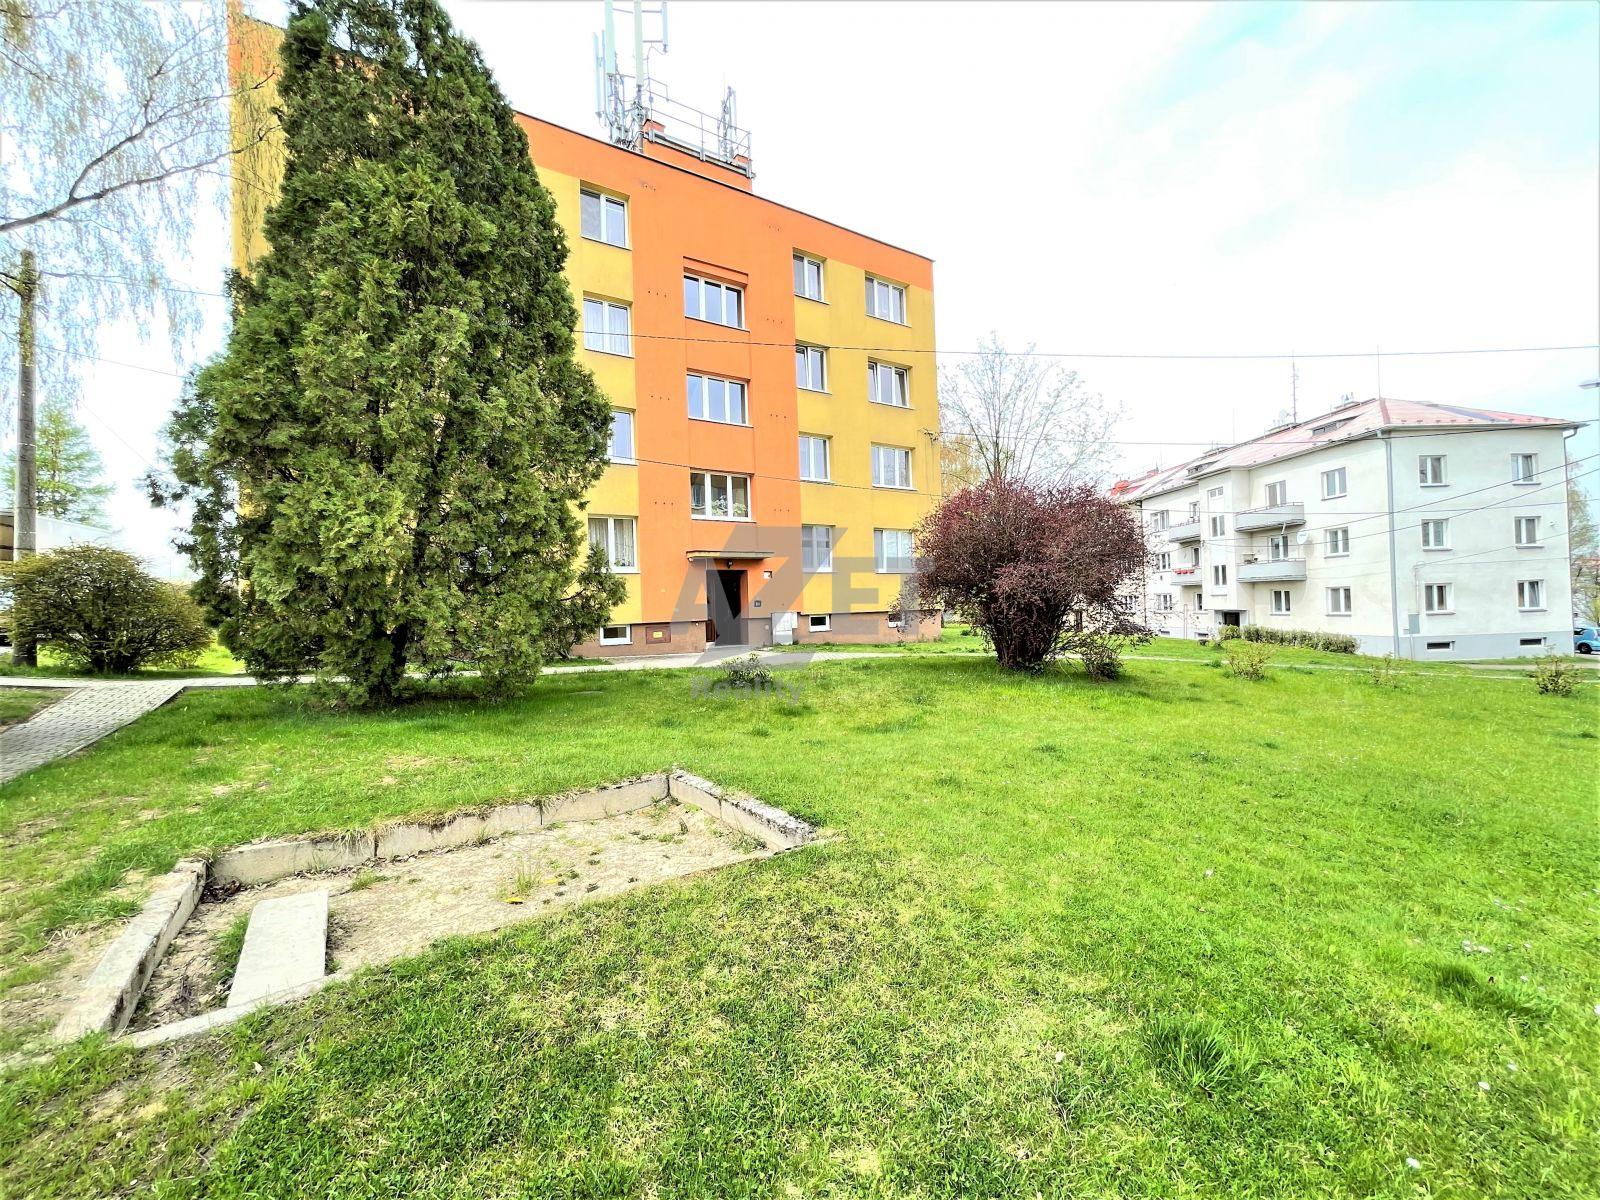 Prodej, byt 3+1, 66 m2, Ostrava-Petřkovice, ul. Balbínova